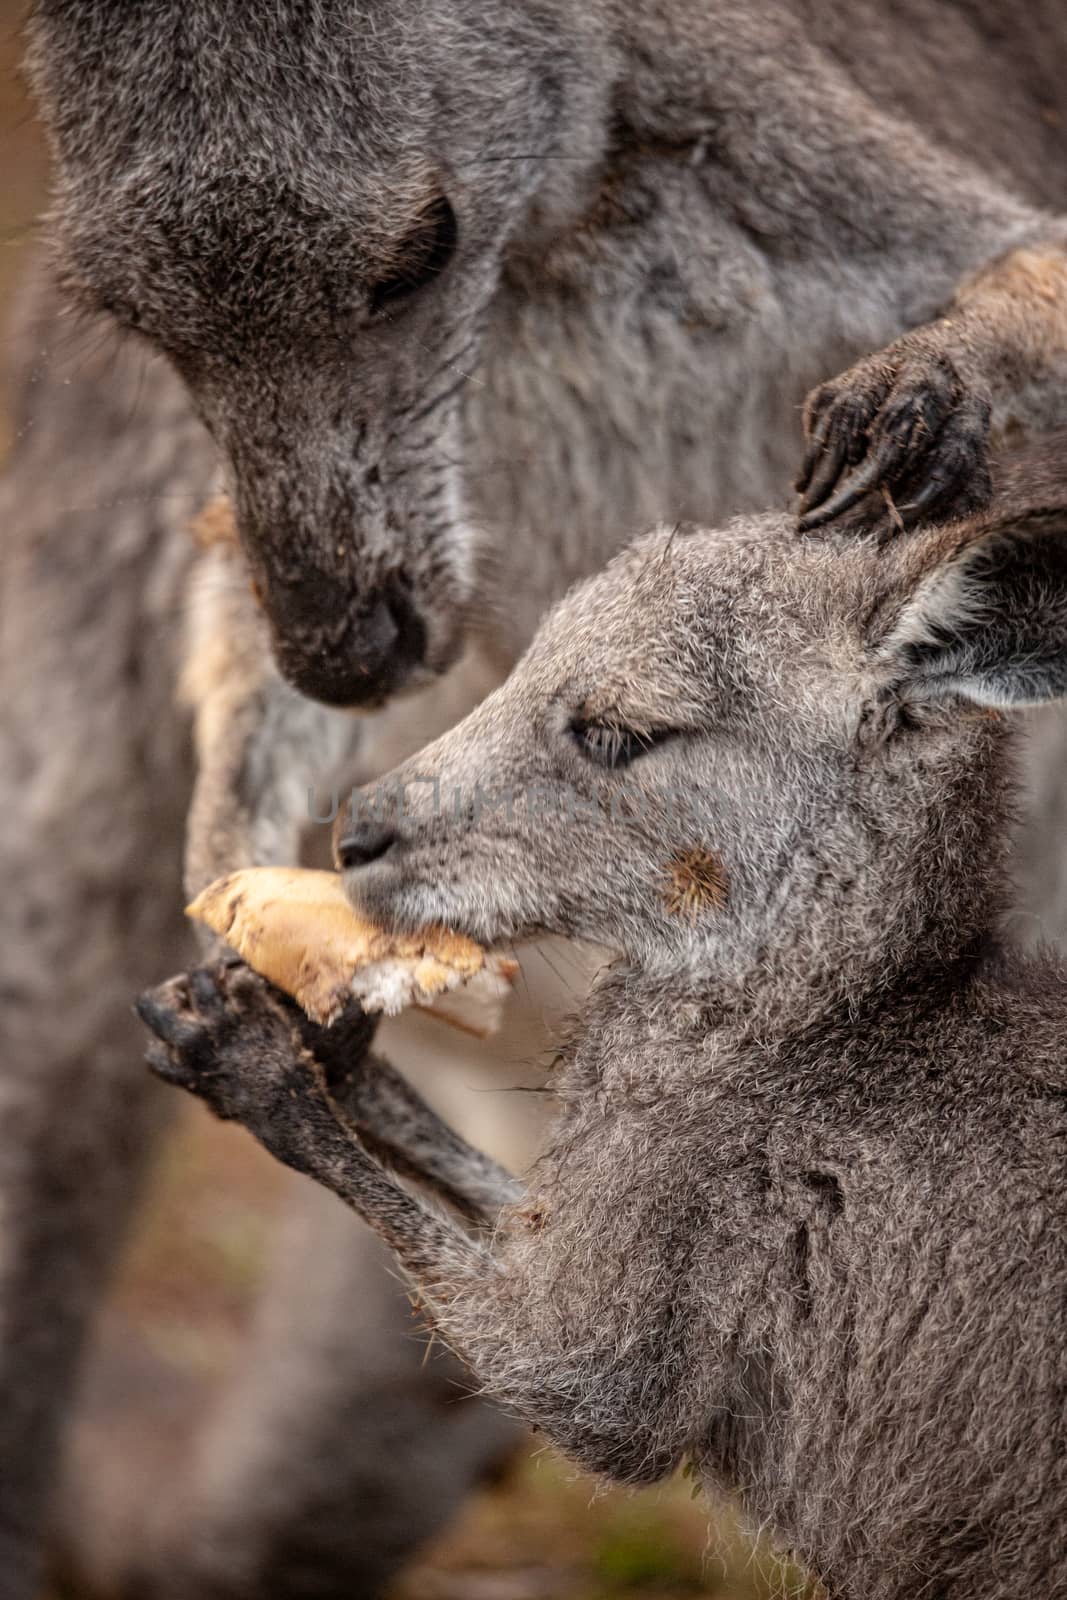 Mother kangaroo sharing food wih her joey by lovleah